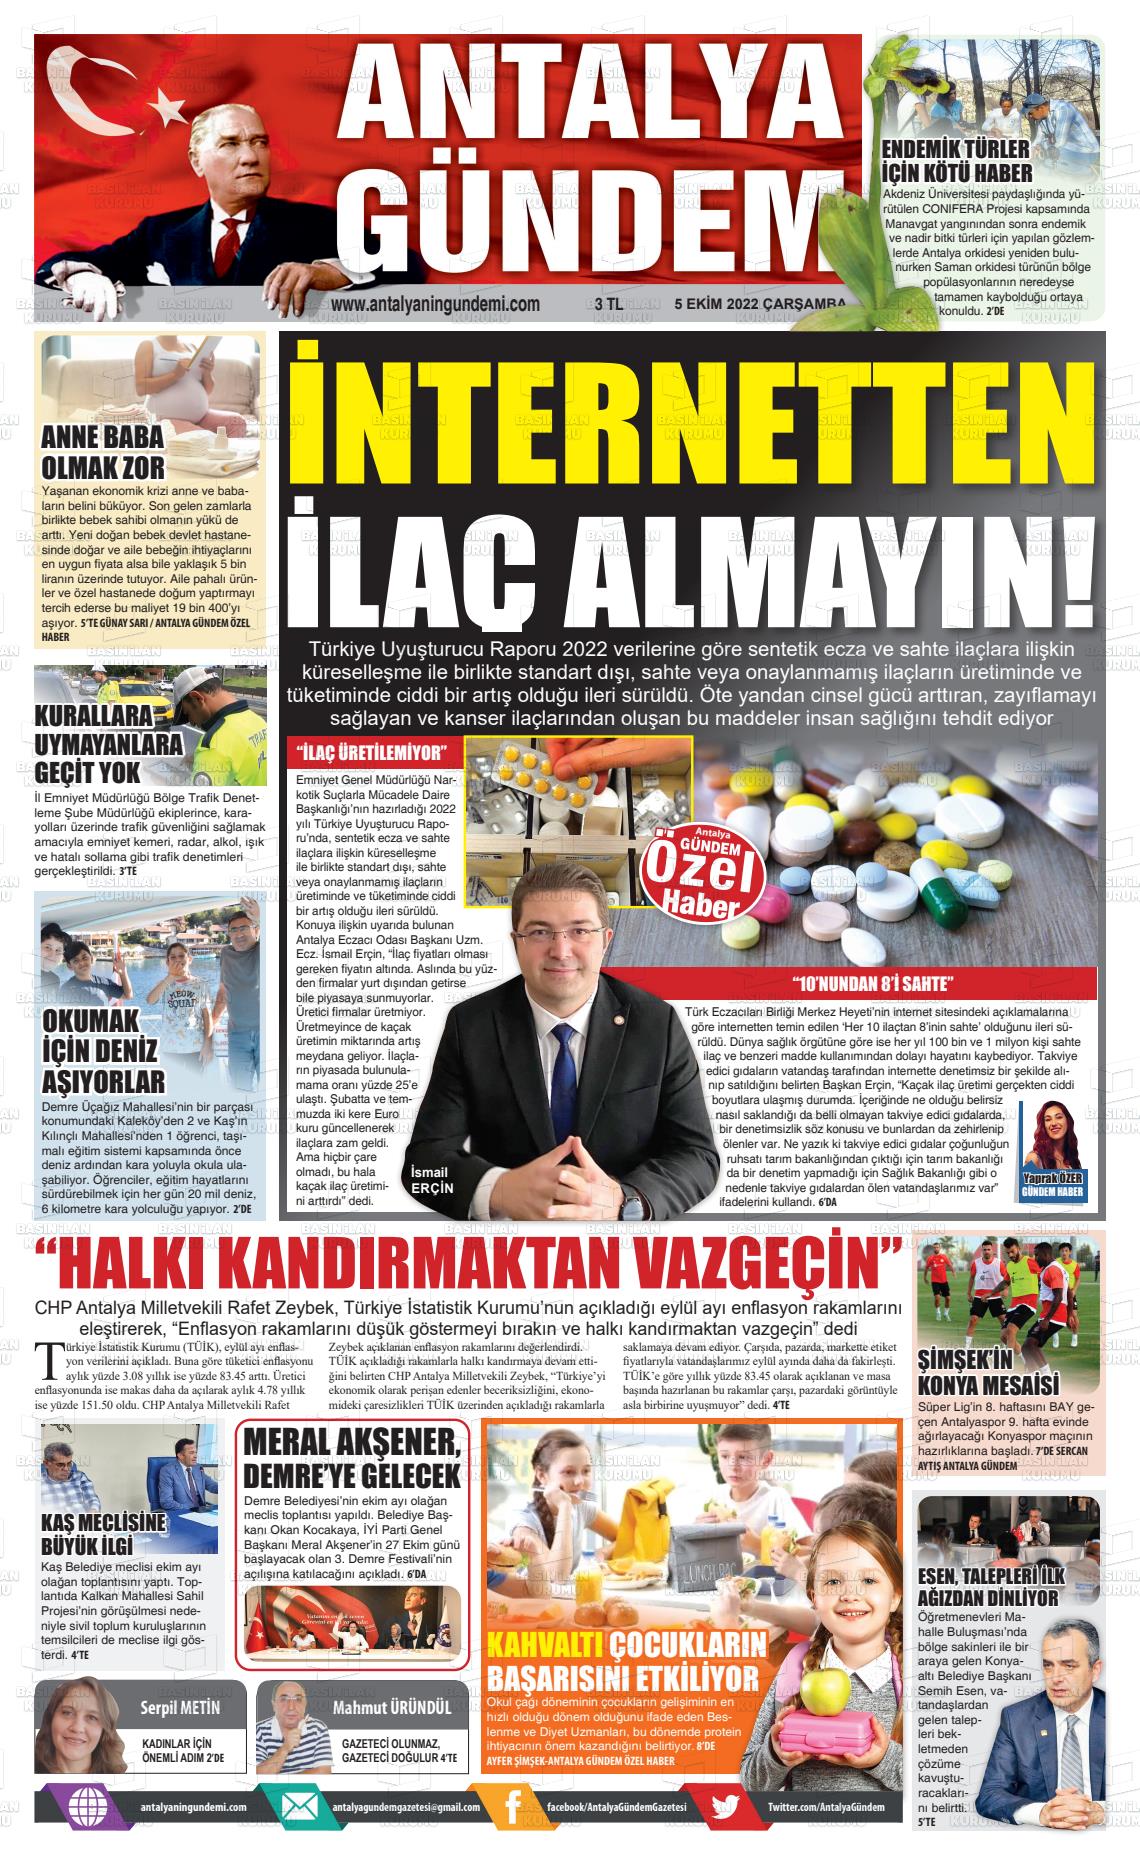 05 Ekim 2022 Antalya'nın Gündemi Gazete Manşeti